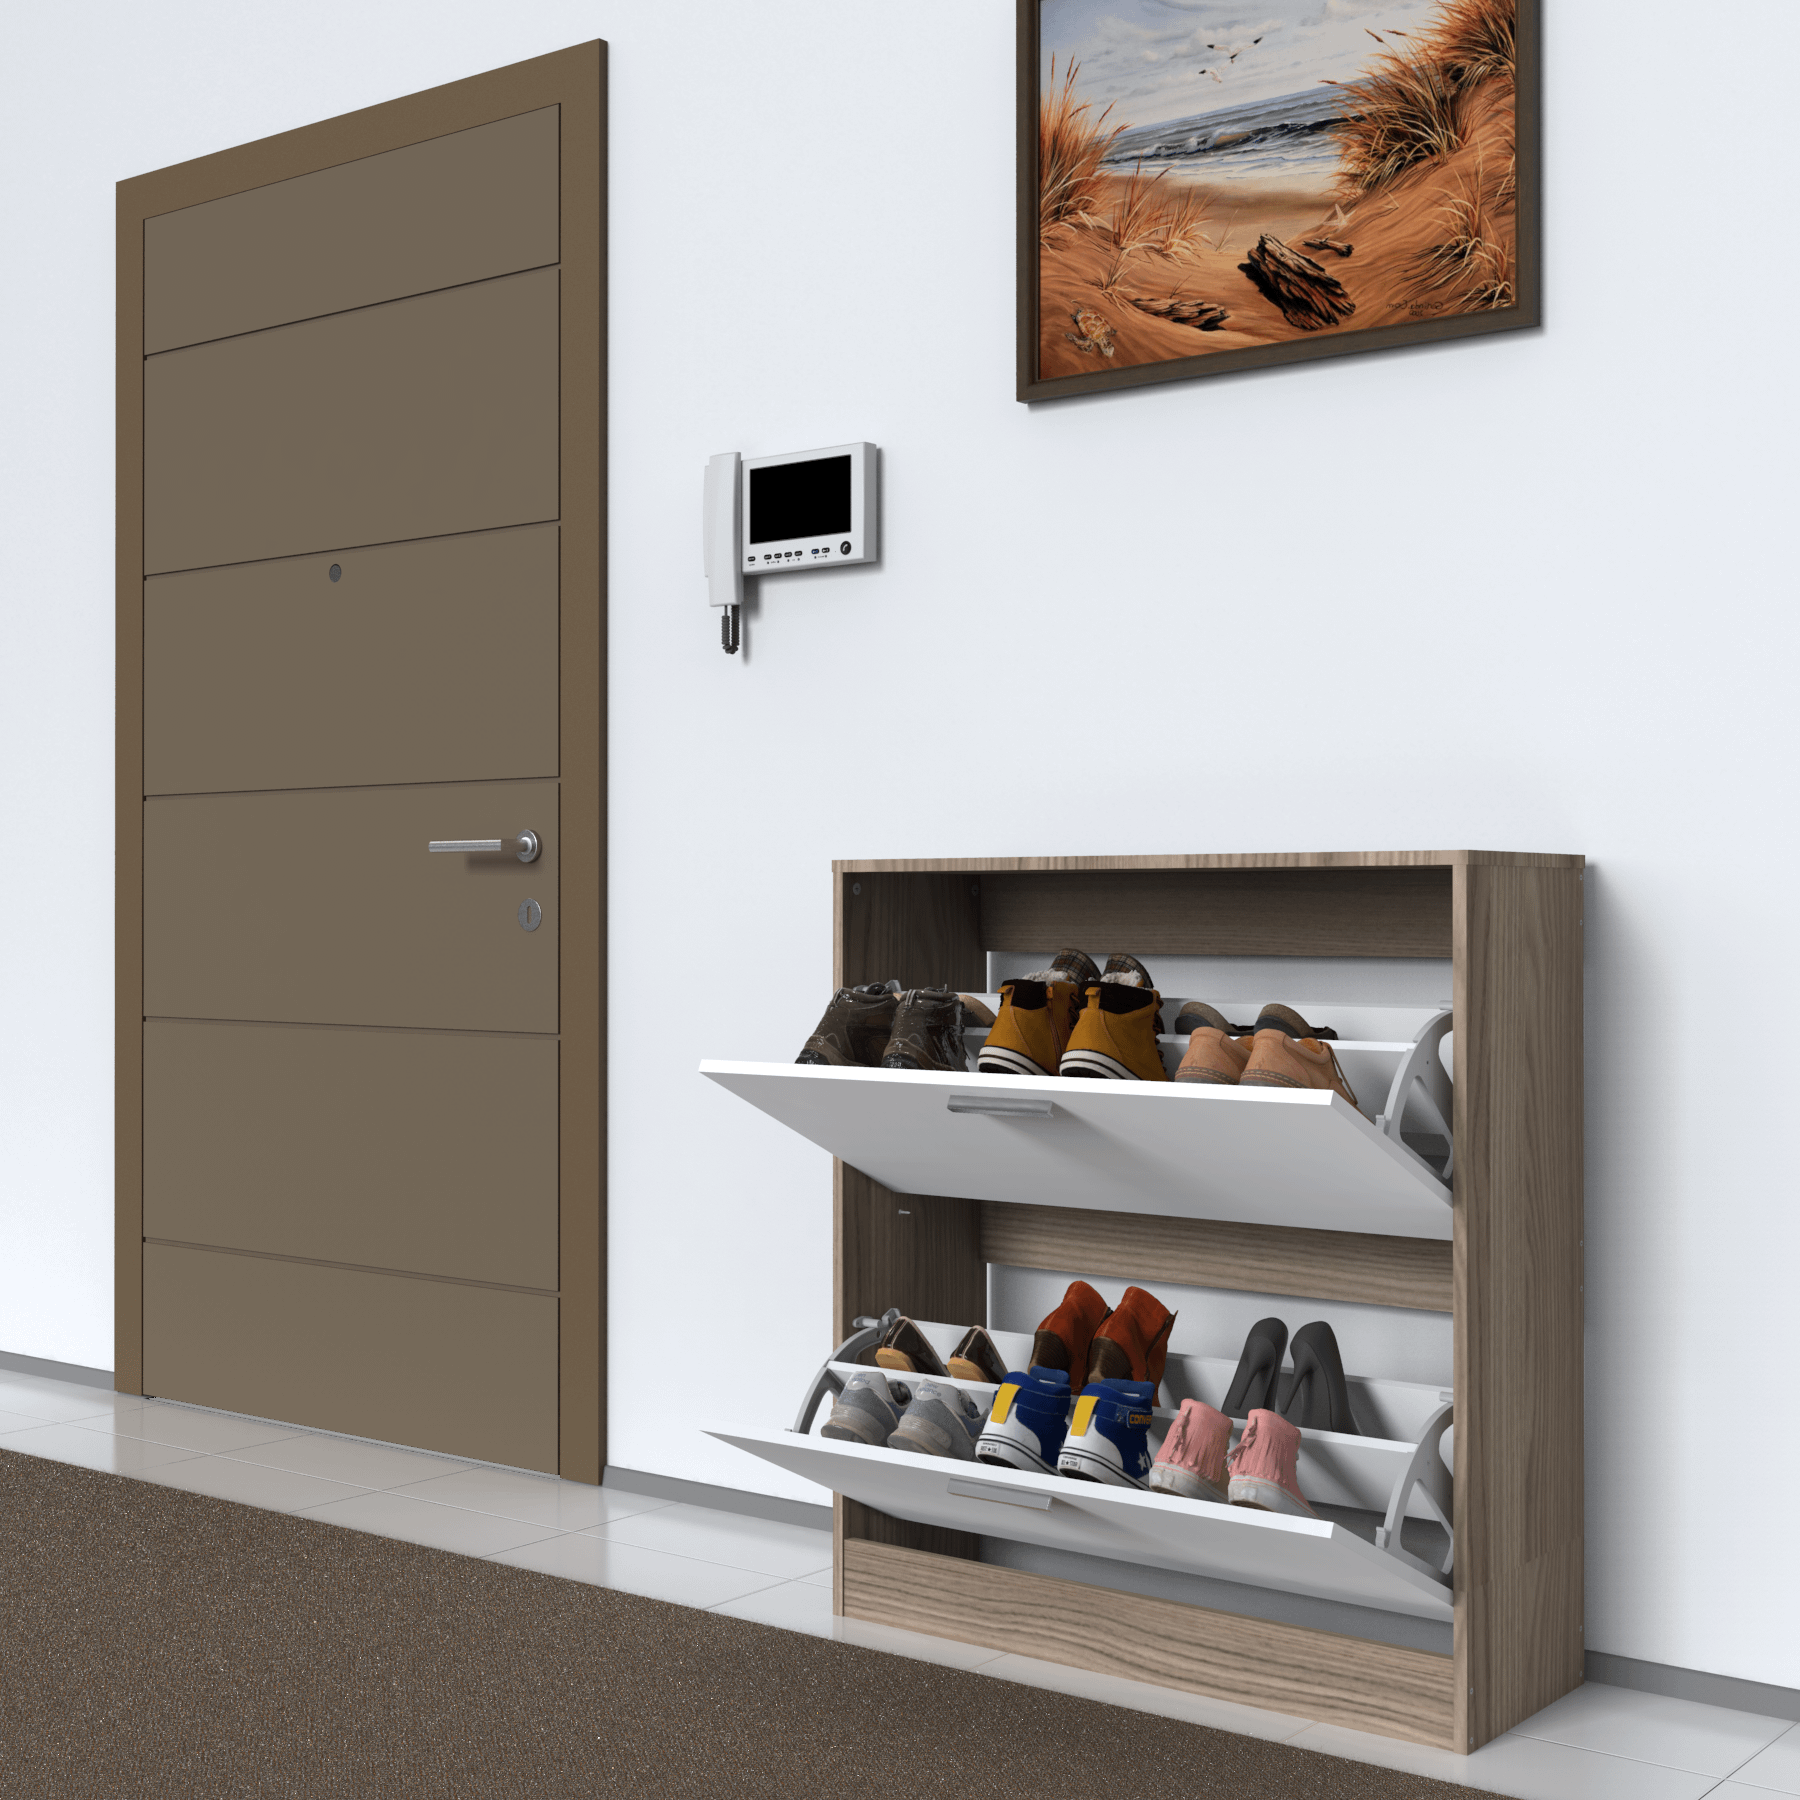 Mimilos A2 Shoe Cabinet